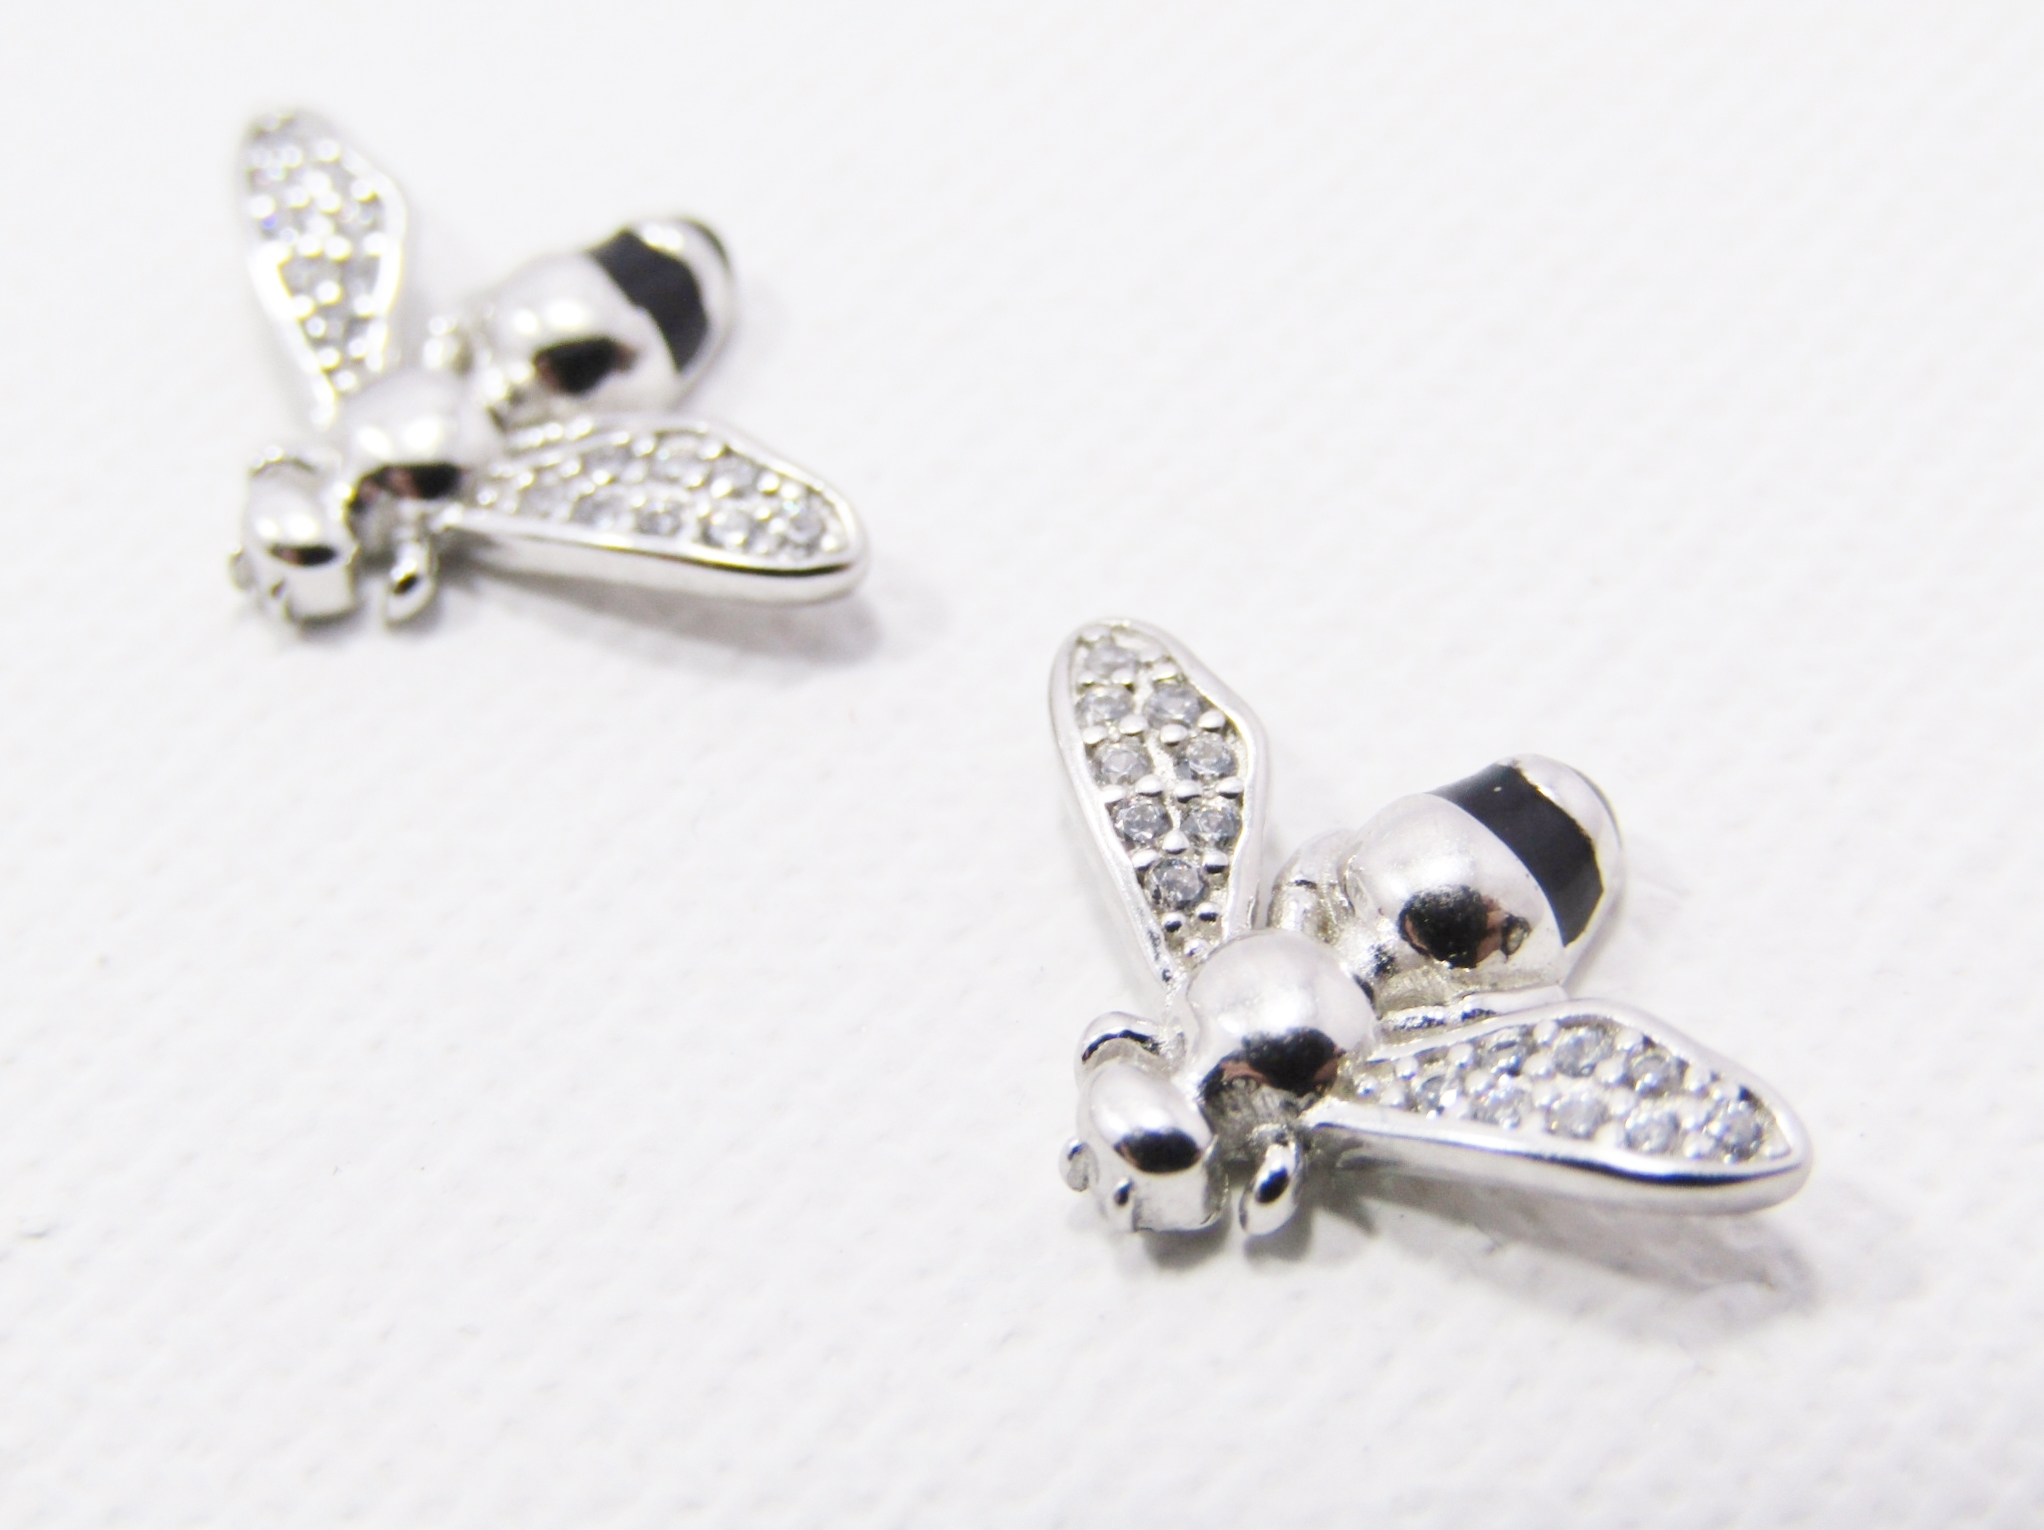 Gorgeous Pair of Bee Stud Earrings in Sterling Silver